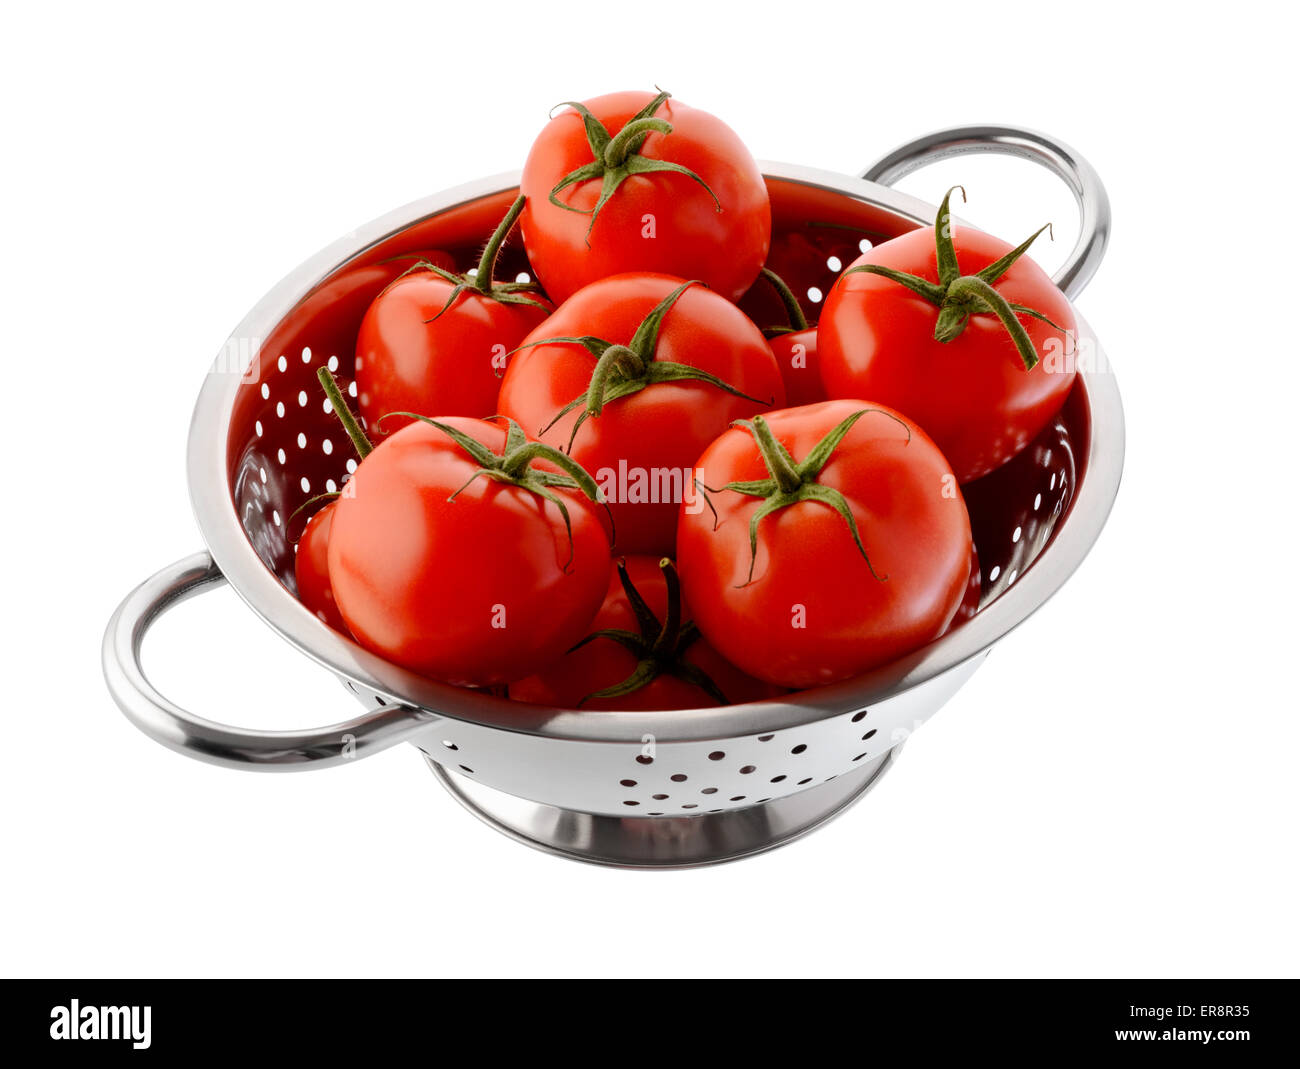 Obst und Gemüse: frische rote Tomaten in einem Stahl Sieb, isoliert auf weißem Hintergrund Stockfoto